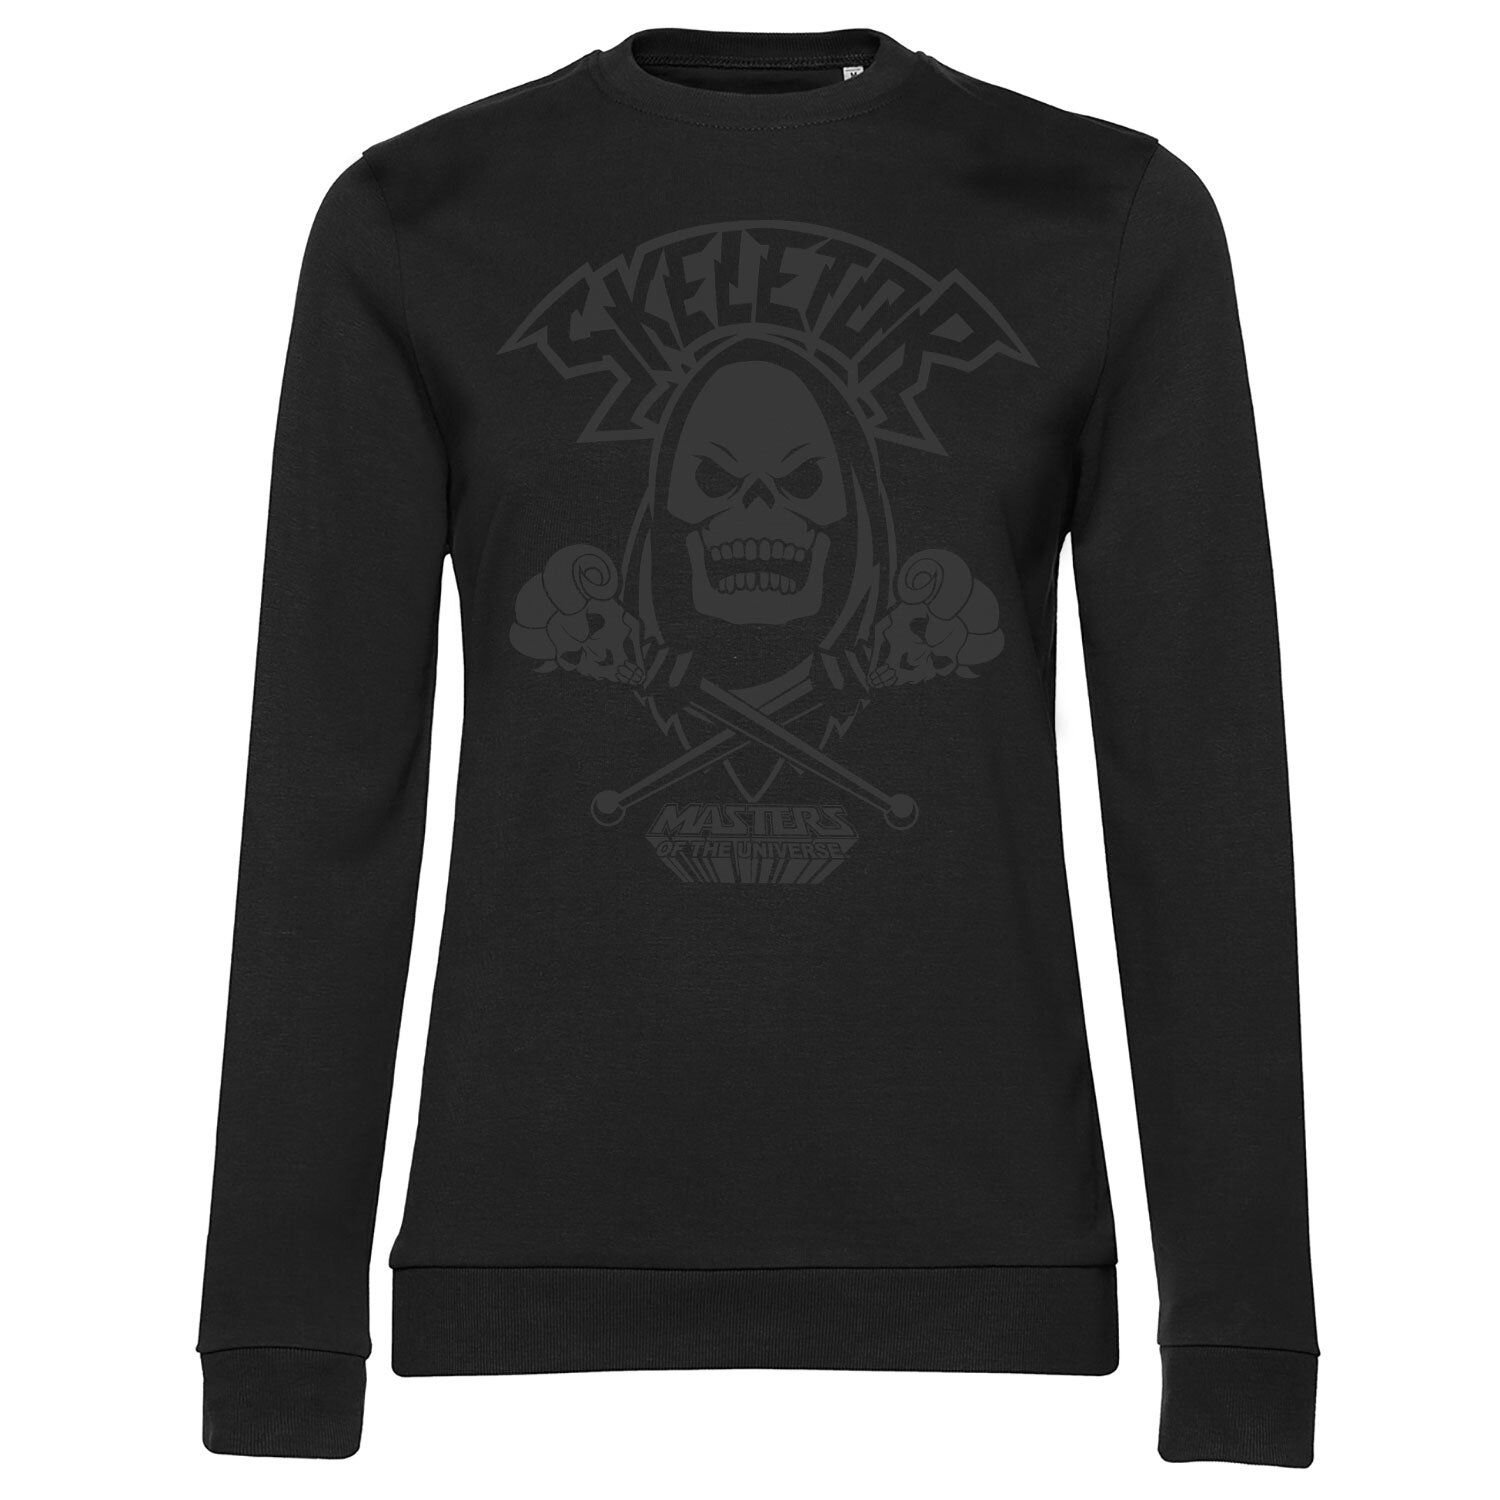 Skeletor Black On Black Girly Sweatshirt